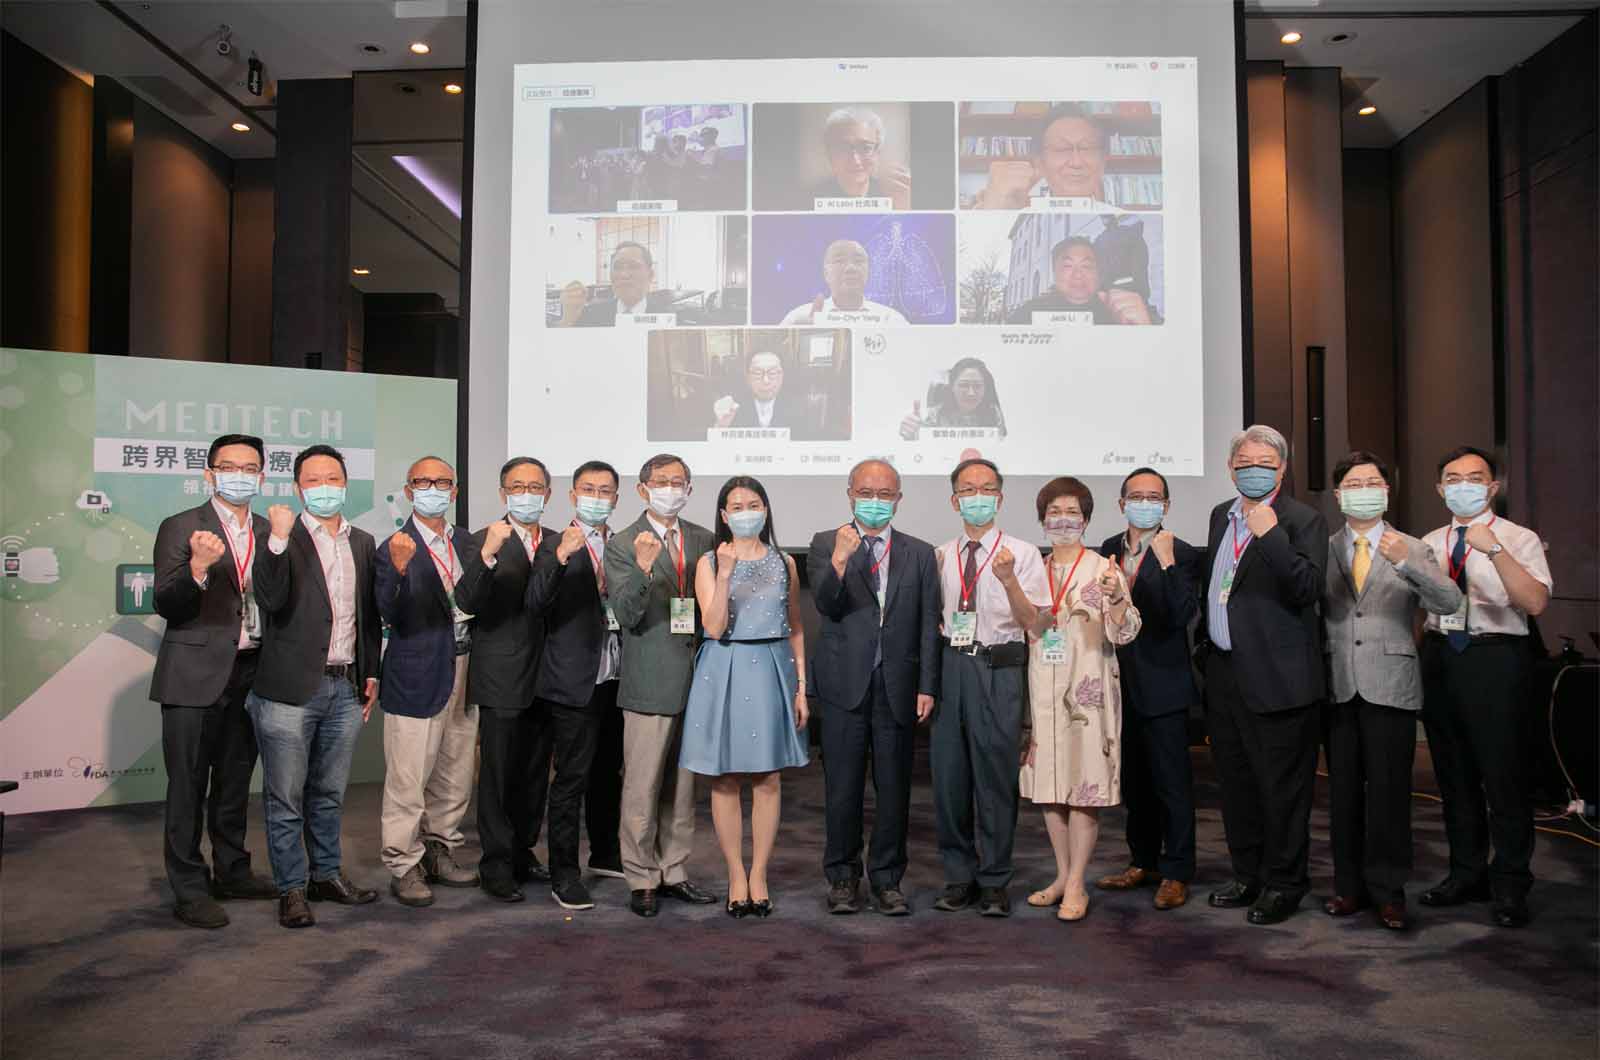 台灣智慧醫材領袖高峰會，邀請產官學三方代表，線上實體雙頭研討台灣智慧醫材發展。